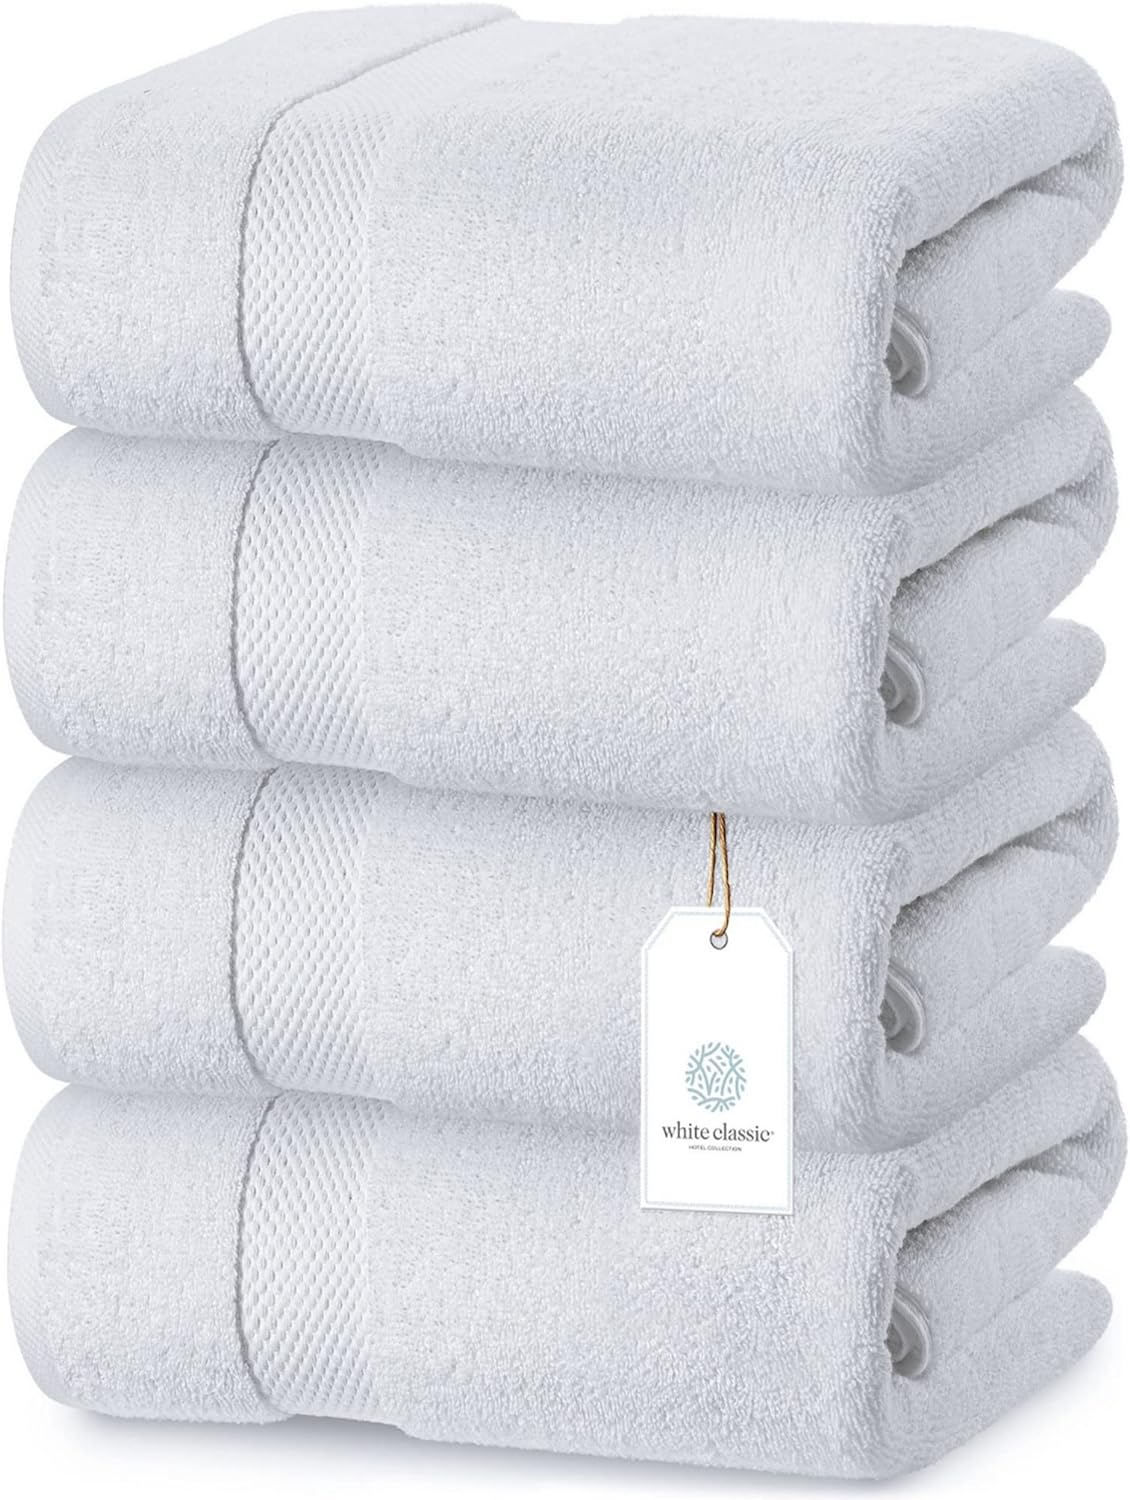 Dorlion Towels Juego de 4 paños blancos 100% algodón turco, toallas  pequeñas para la cara de baño y cocina, color azul marino